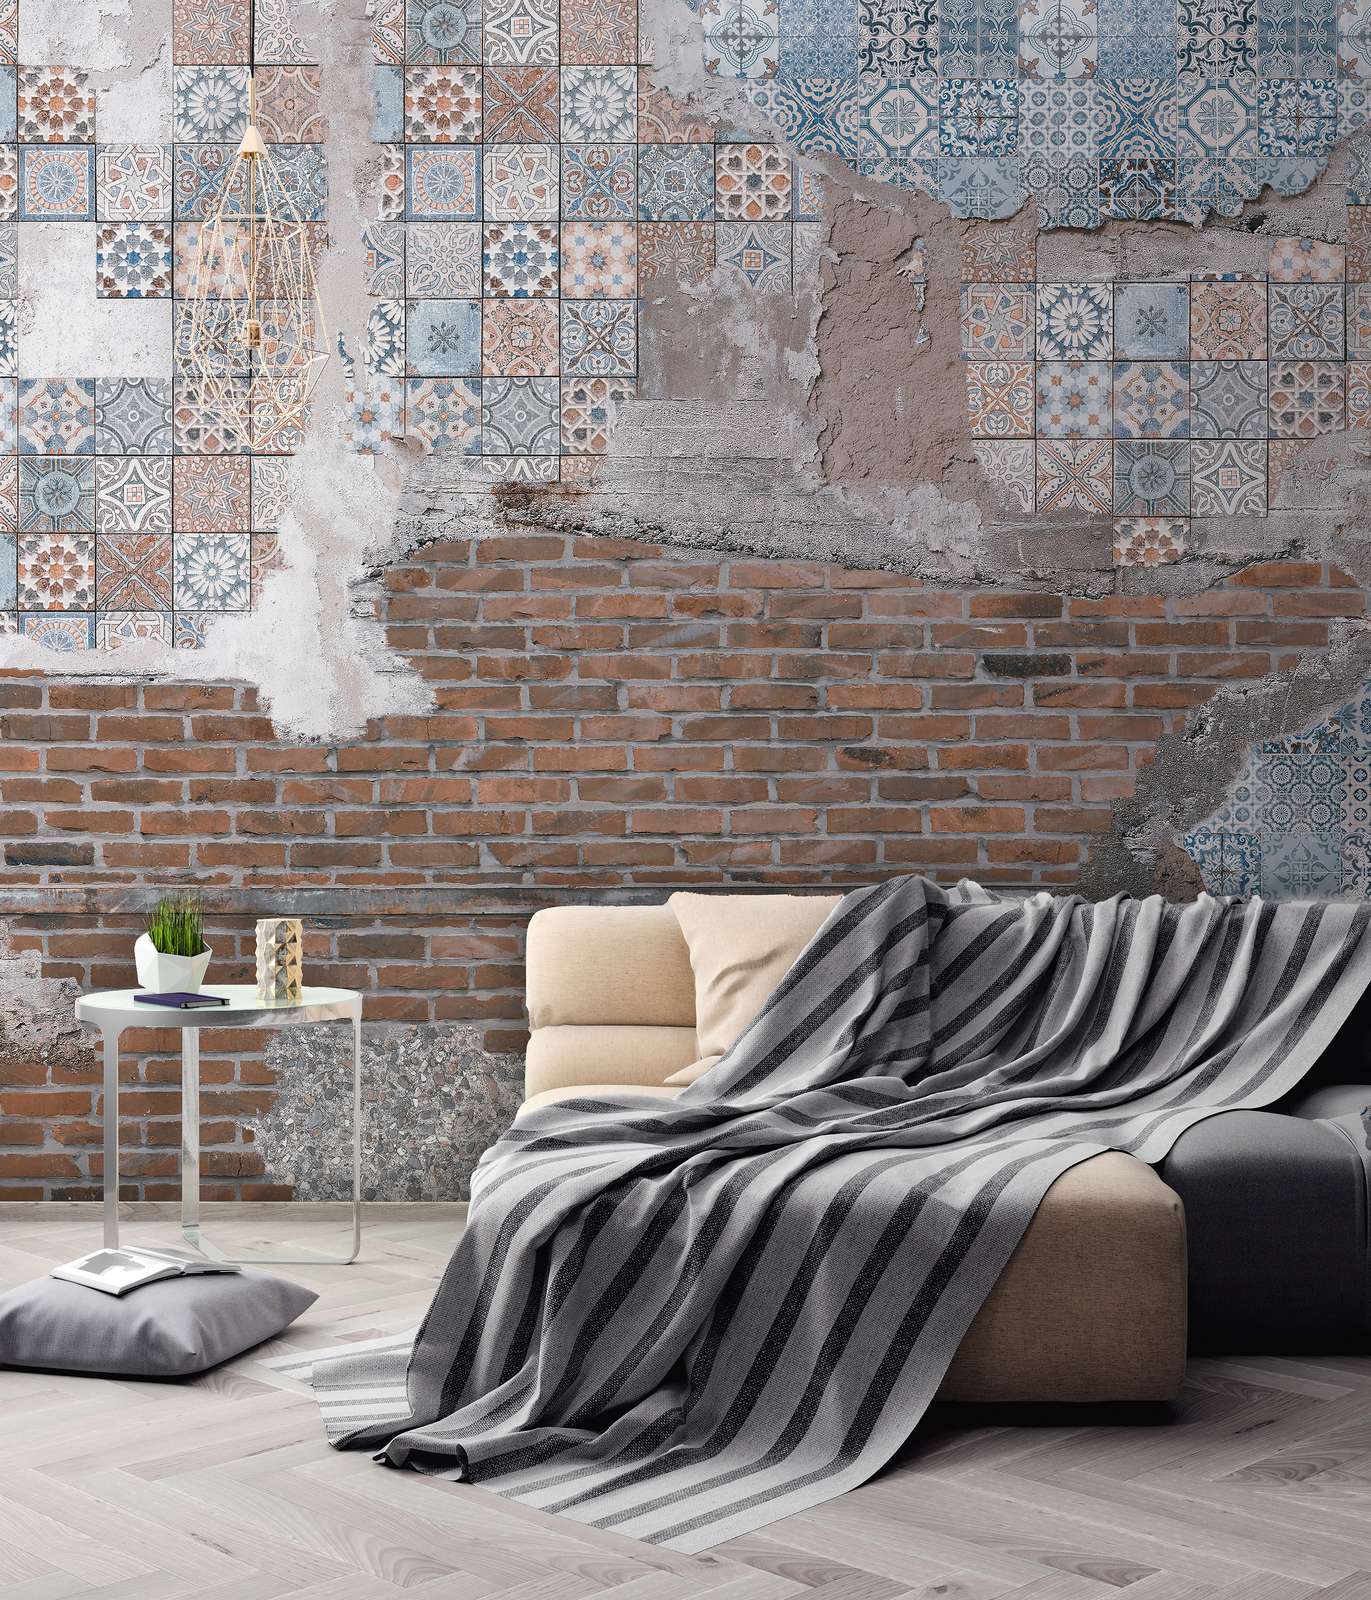             Fototapete Backsteinmauer mit verputzten Mosaiksteinen – Braun, Blau, Grau
        